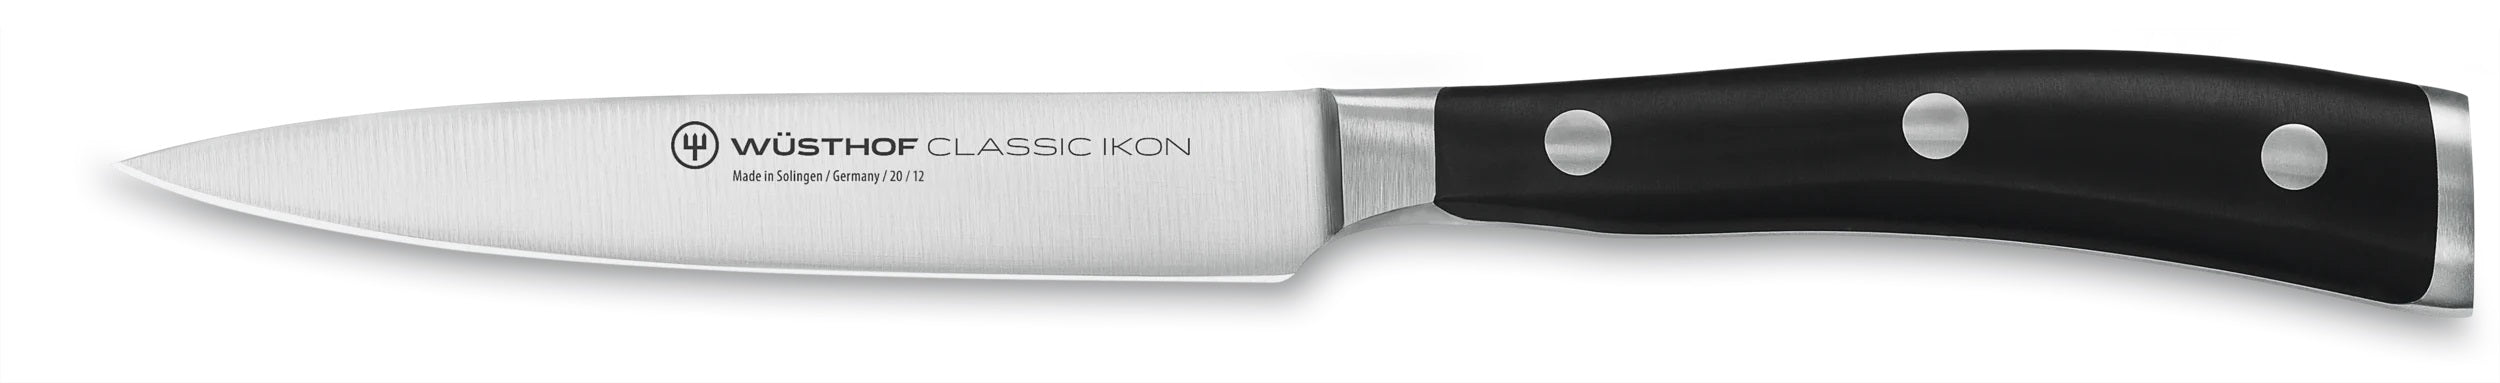 Wusthof Classic Ikon 4.5" Utility Knife 1040330412